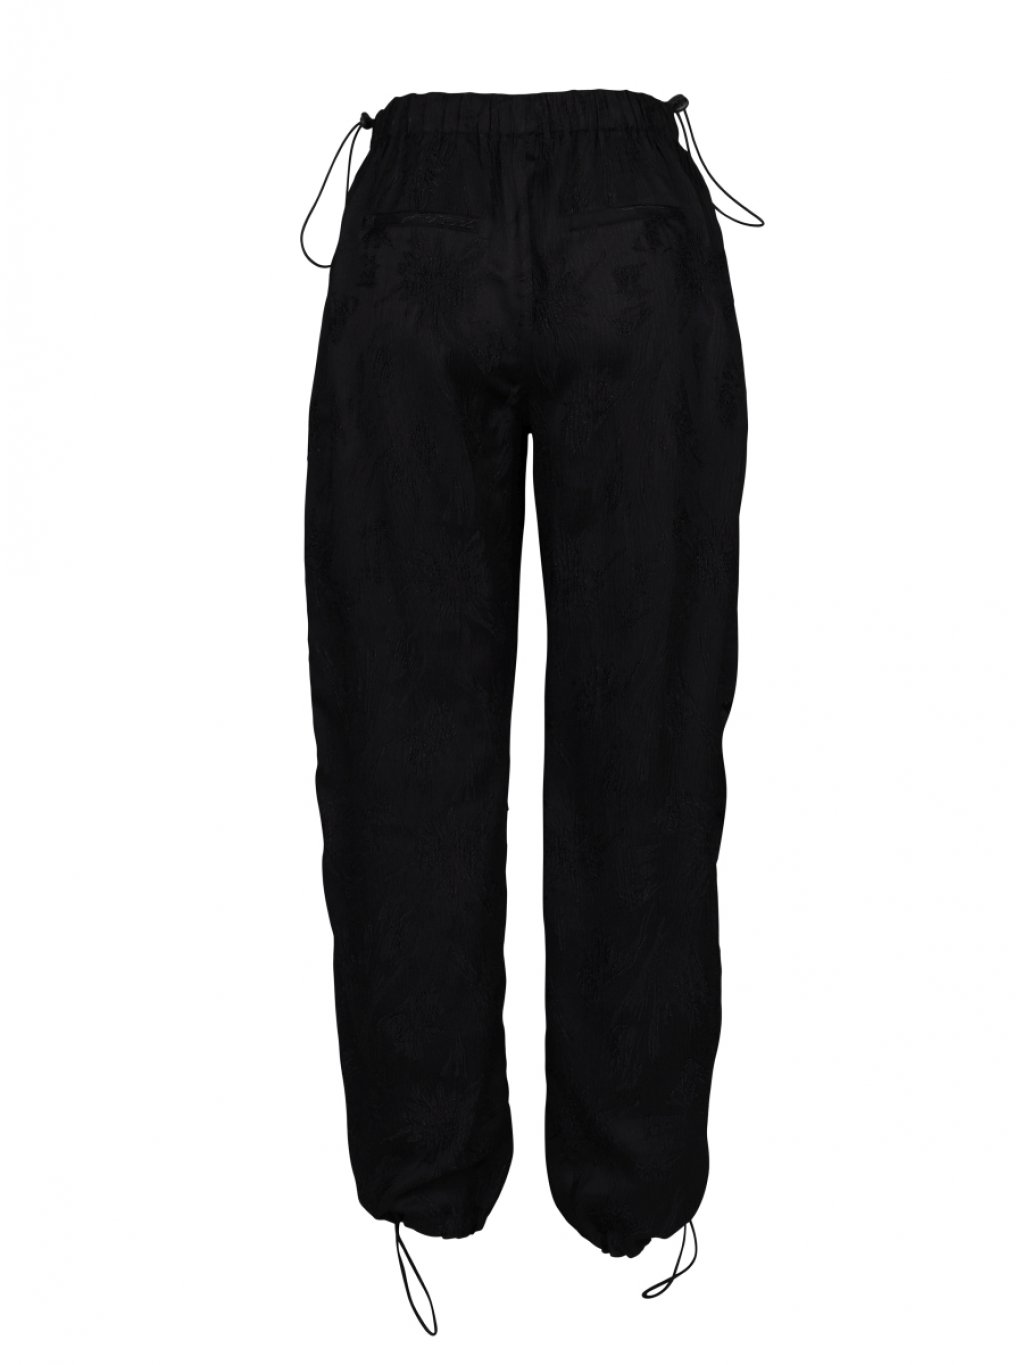 Kalhoty Nu Denmark 7966-10 černé se vzorem